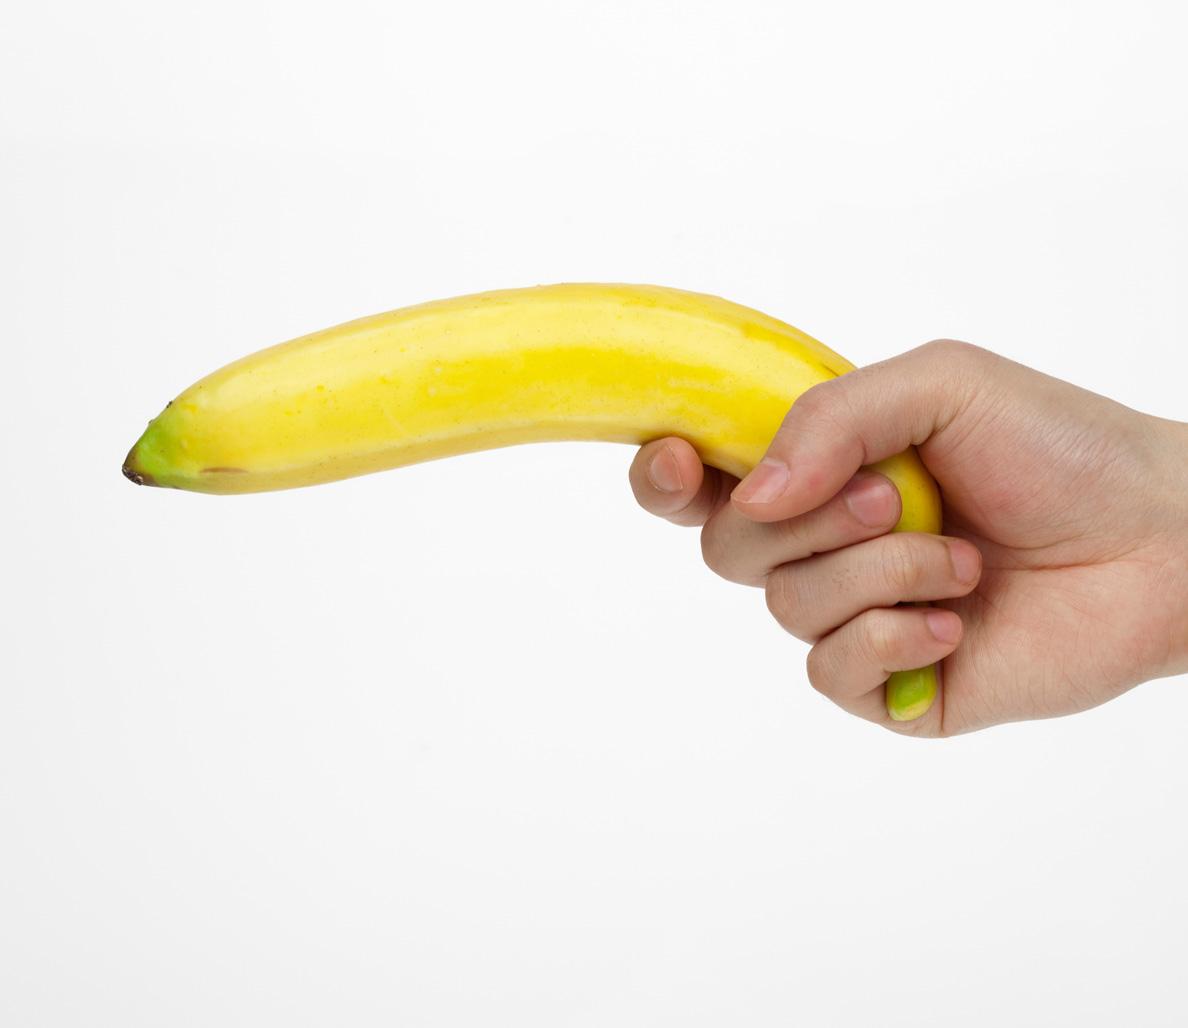 Main penis weed banana 